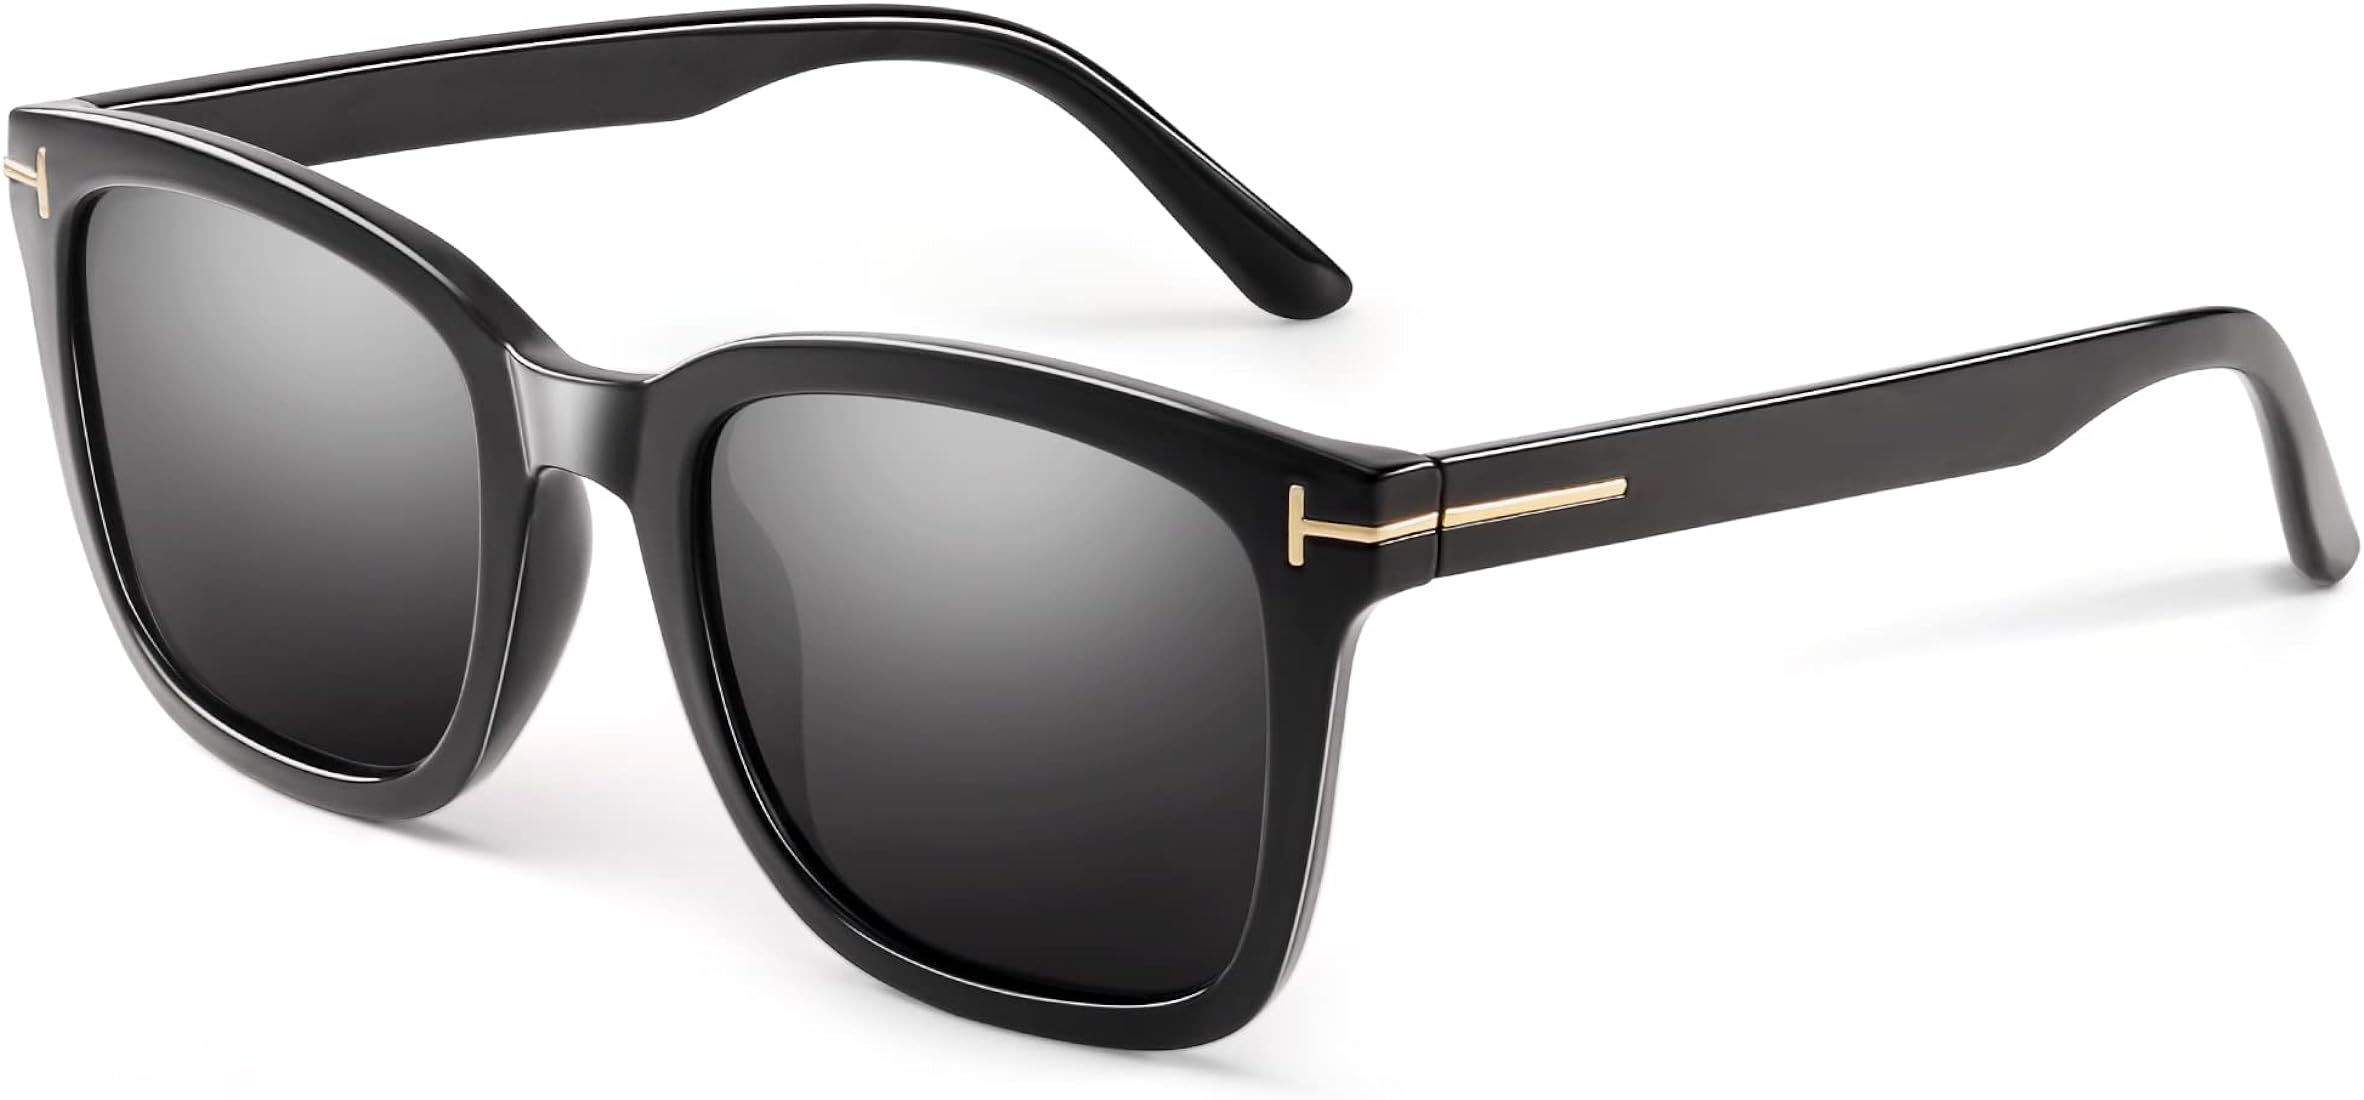 Fashion Sunglasses for Women Polarized Driving Anti Glare UV400 Protection Stylish Design | Amazon (US)